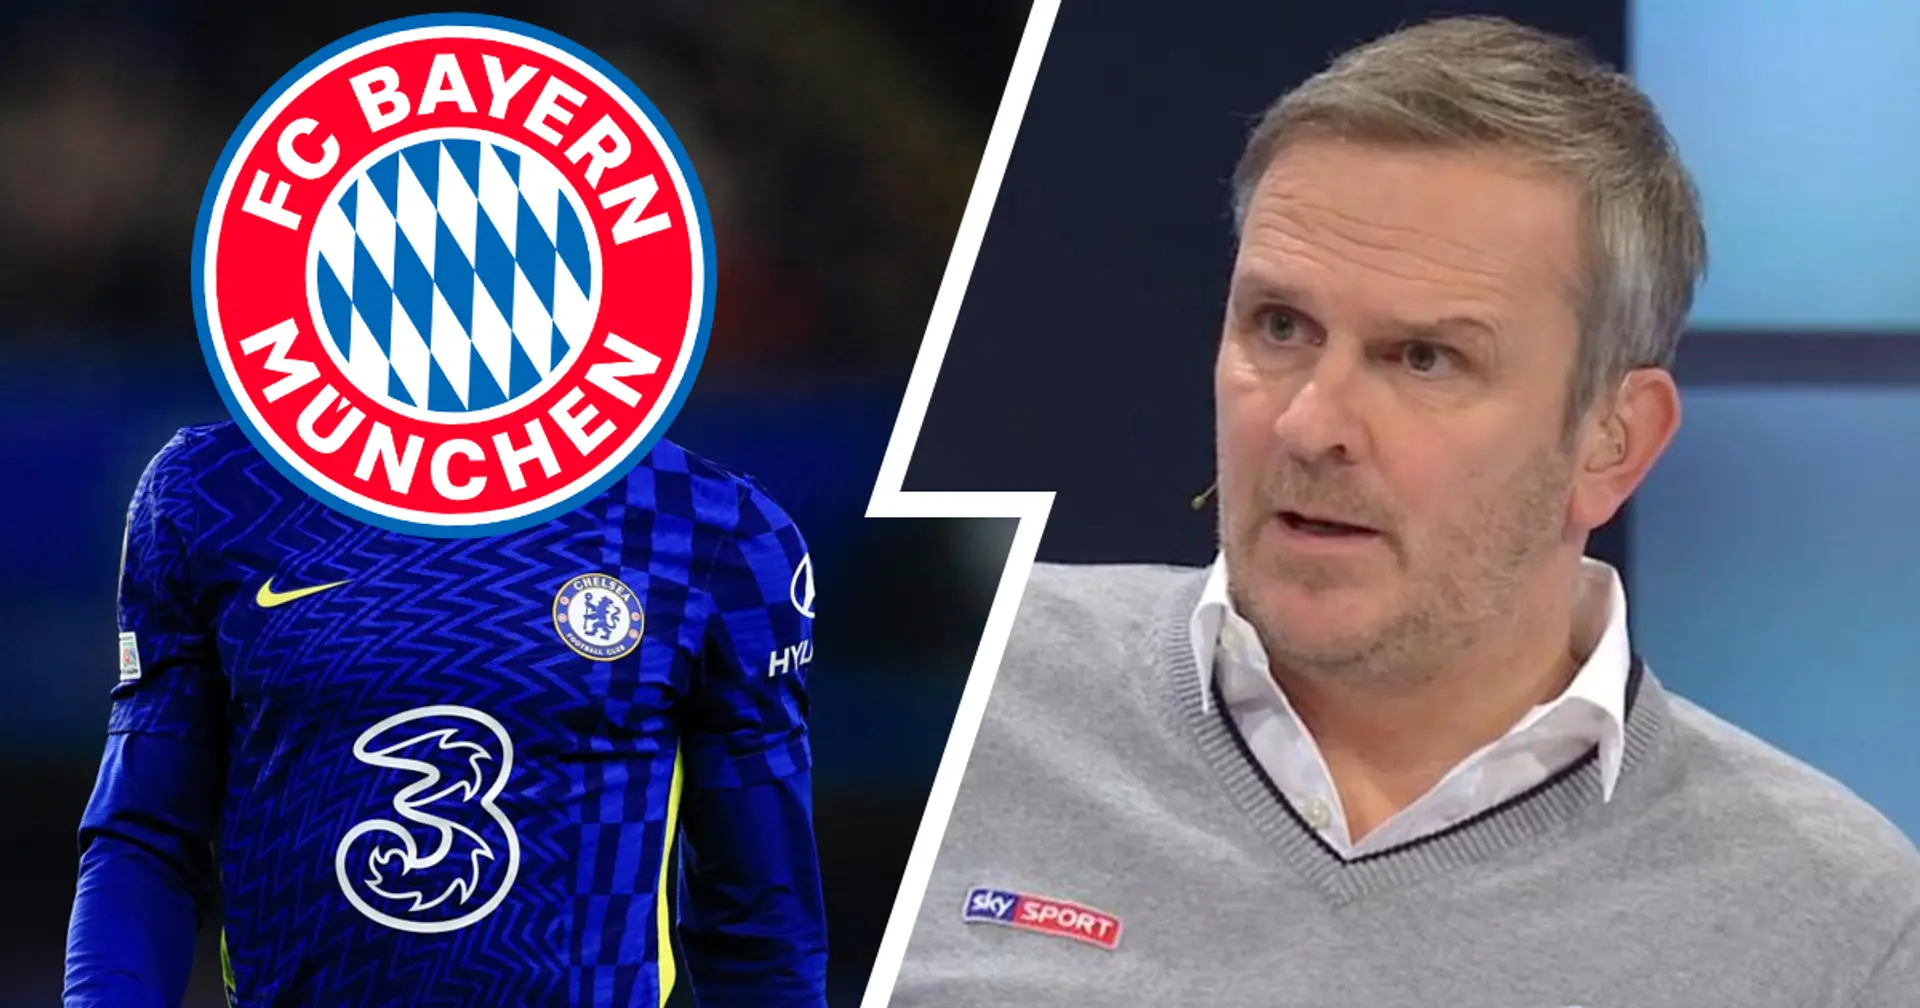 "Ein Spieler mit 31, 32, 33 würde helfen": Hamann schlägt Chelsea-Star als Mittelfeld-Verstärkung für Bayern vor